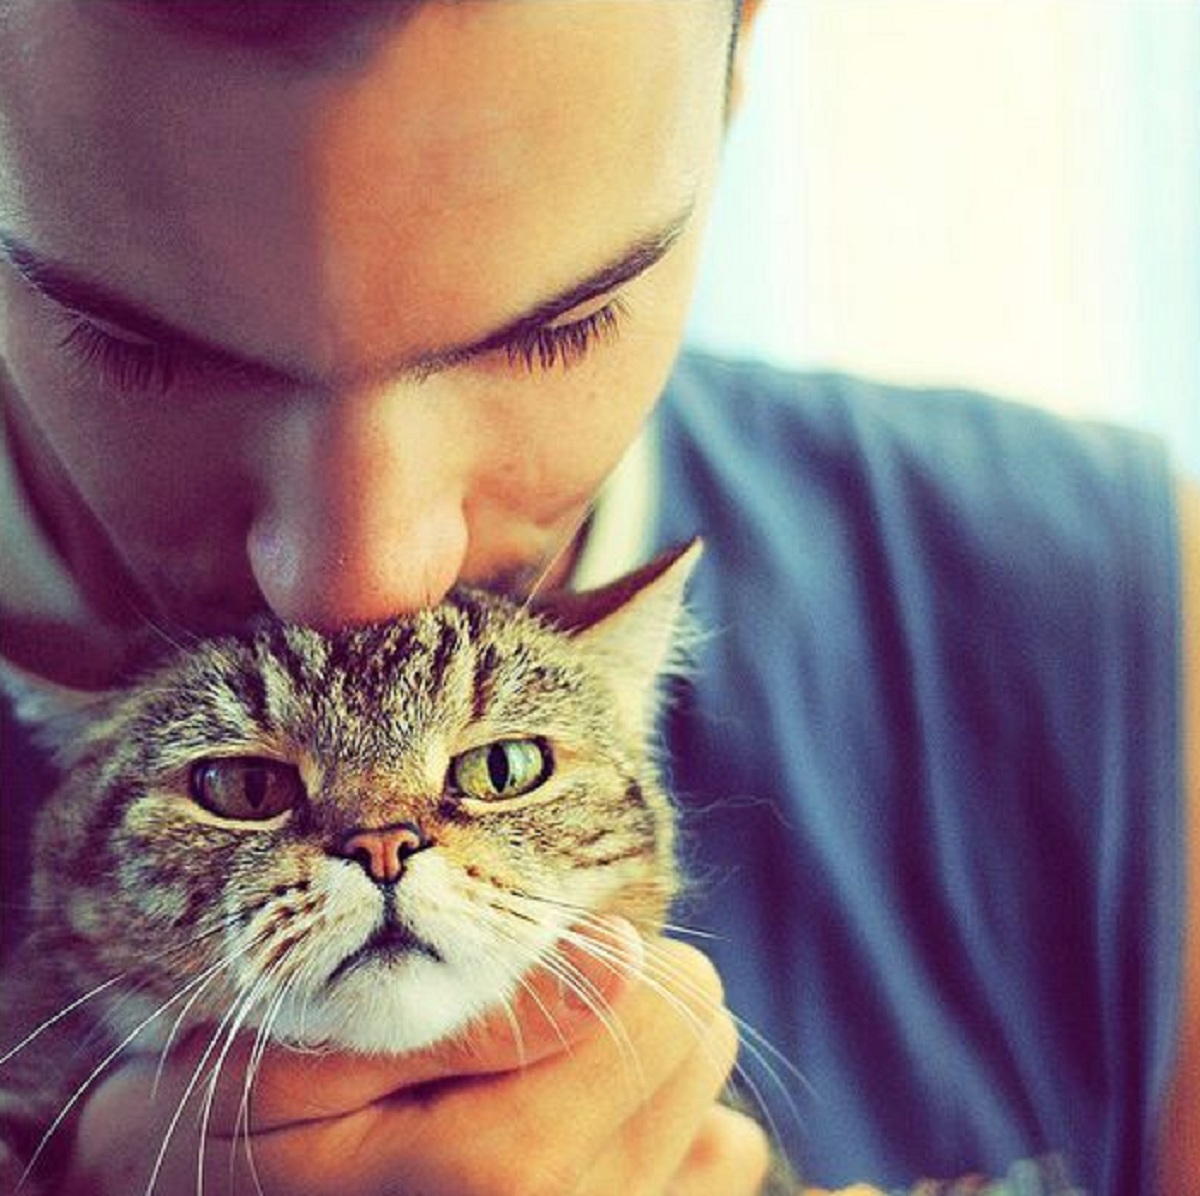 Ini Dia 5 Bentuk Cinta Kucing Kepada Majikannya Yang Jarang Disadari, Pemilik Kucing Wajib Tau!